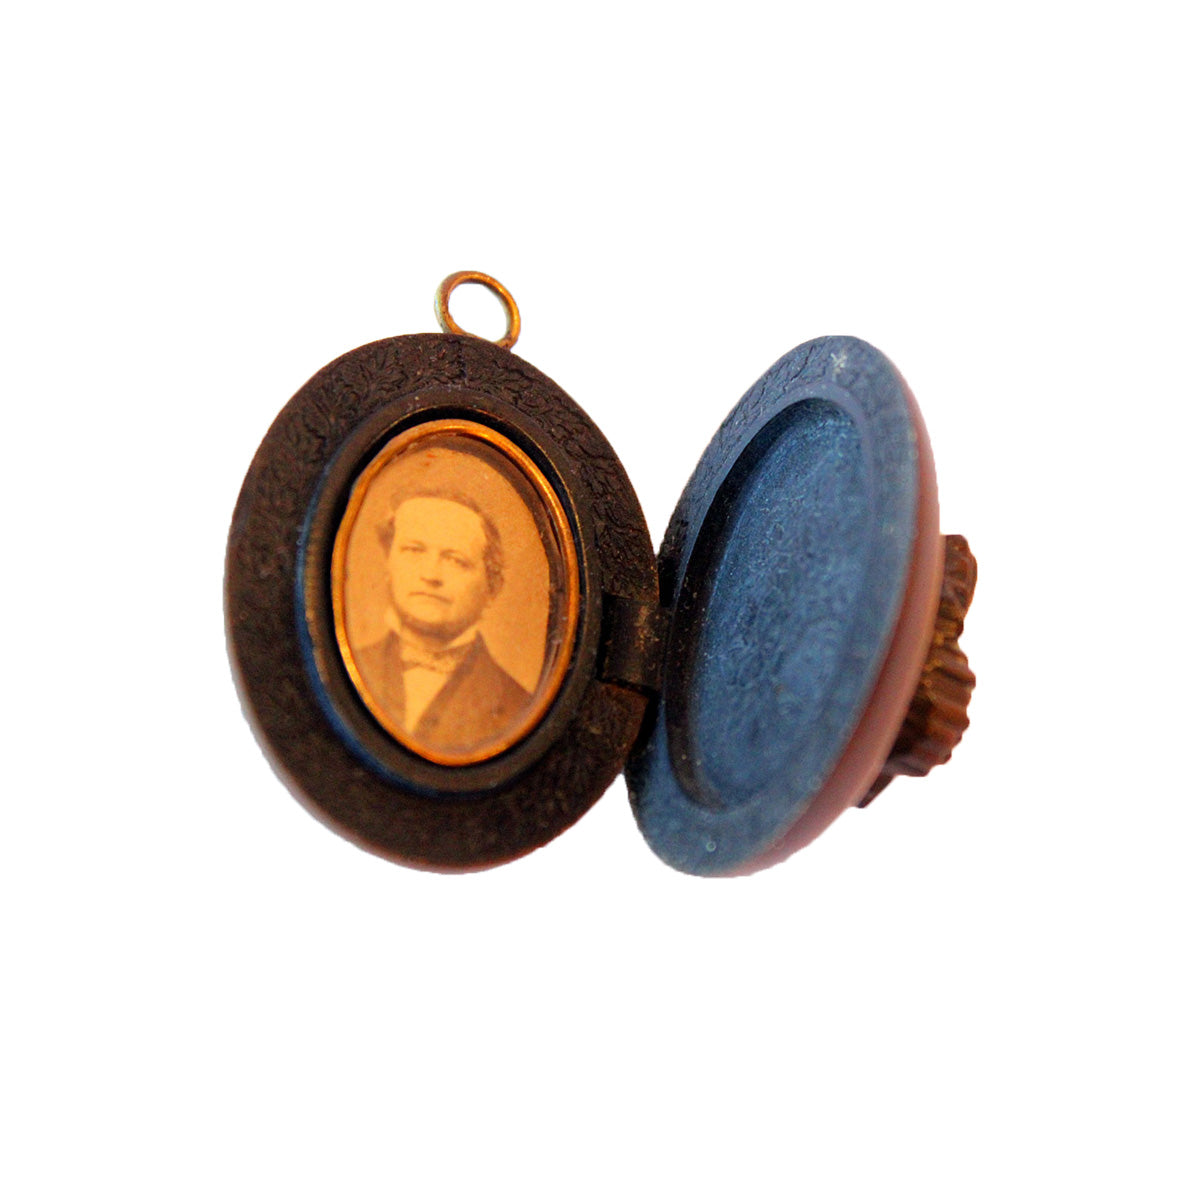 Sjælden medaljon fremstillet af bakkelit fra ca. 1890